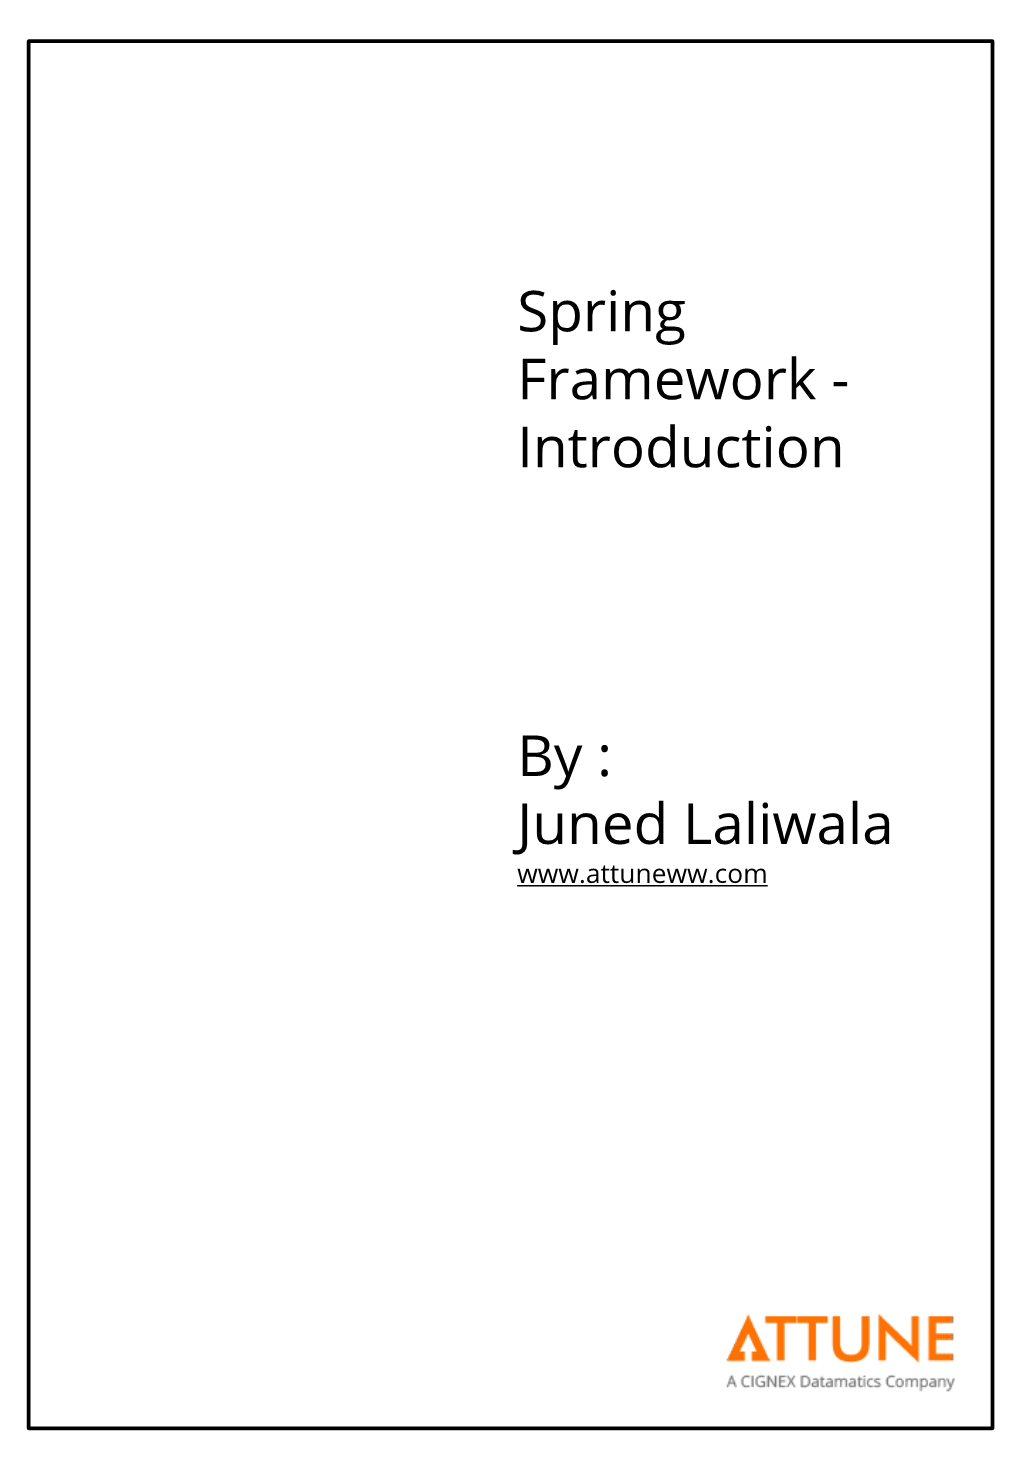 Spring Framework - Introduction